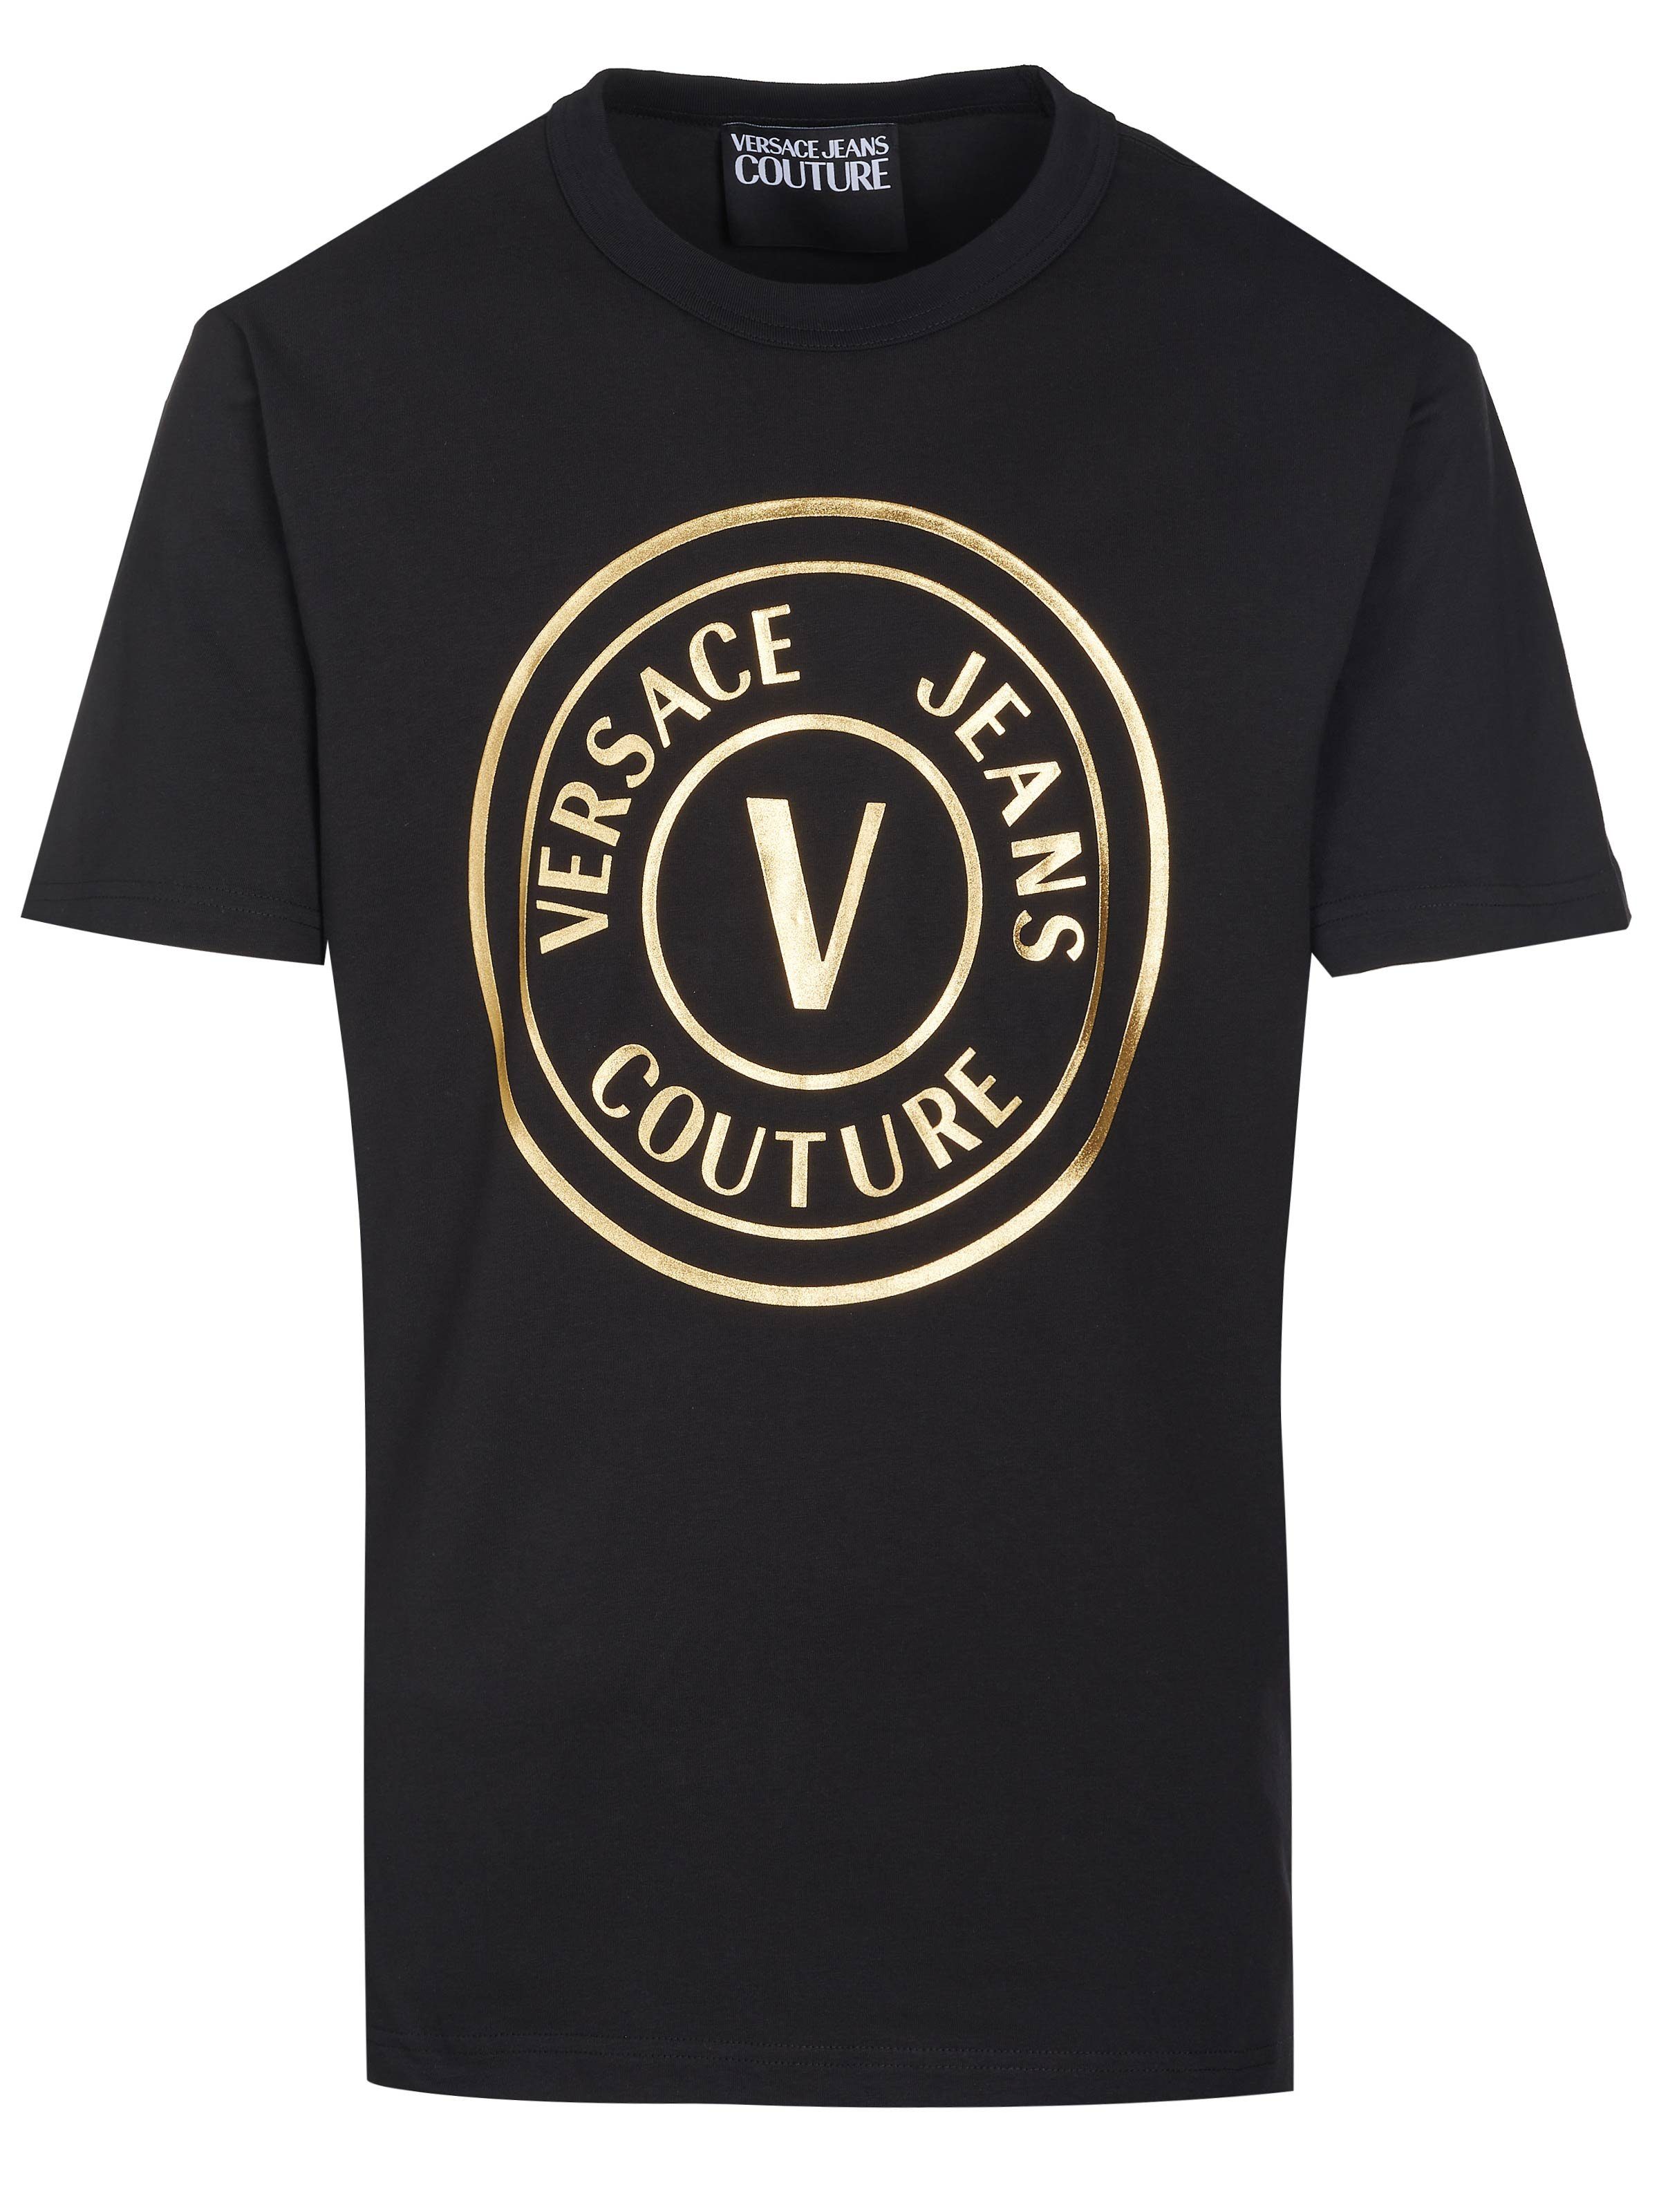 Versace T-Shirt Versace Jeans Couture T-Shirt schwarz